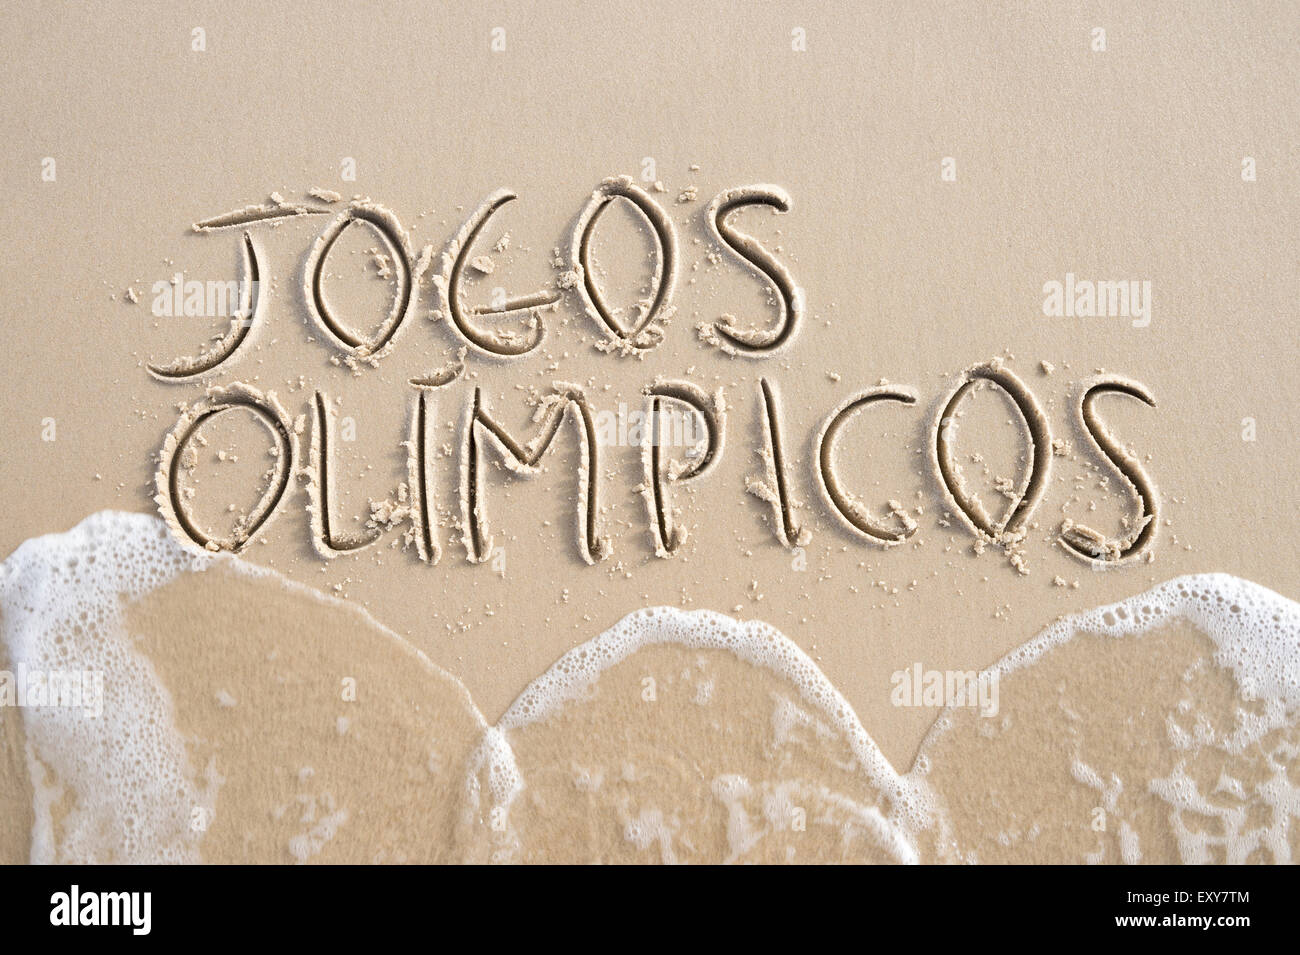 RIO DE JANEIRO, Brasile - 20 Marzo 2015: Semplice Jogos Olimpicos [Traduzione: Giochi Olimpici] messaggio manoscritta su spiaggia di sabbia. Foto Stock